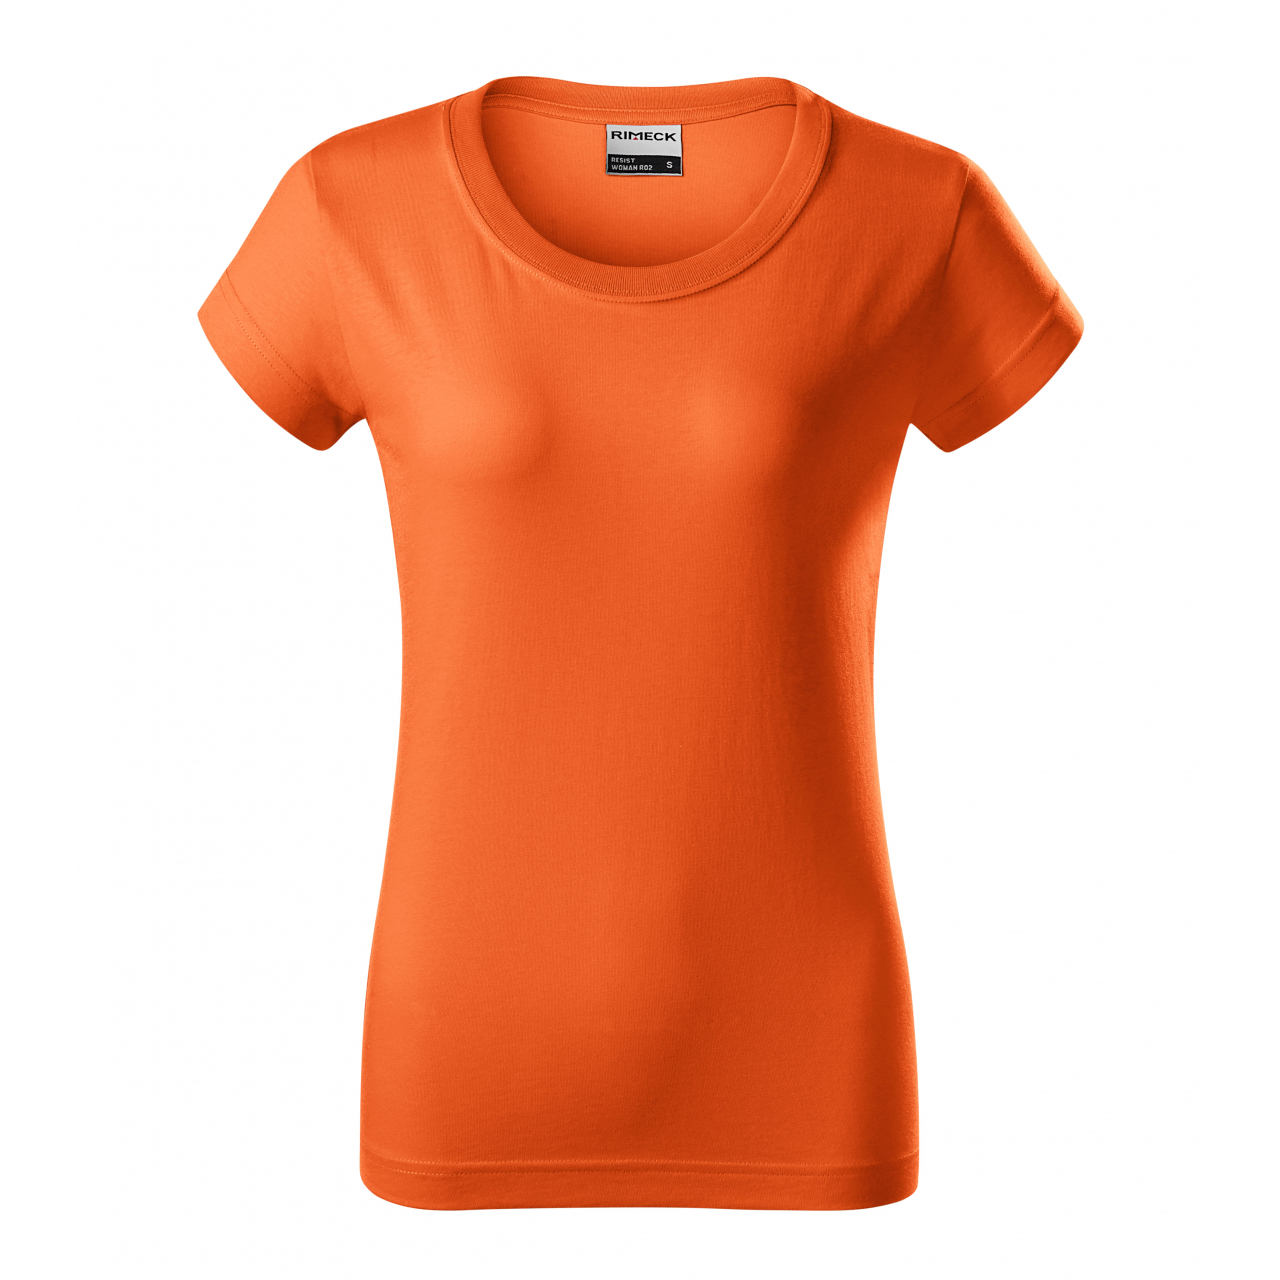 Tričko dámské Rimeck Resist - oranžové, XL